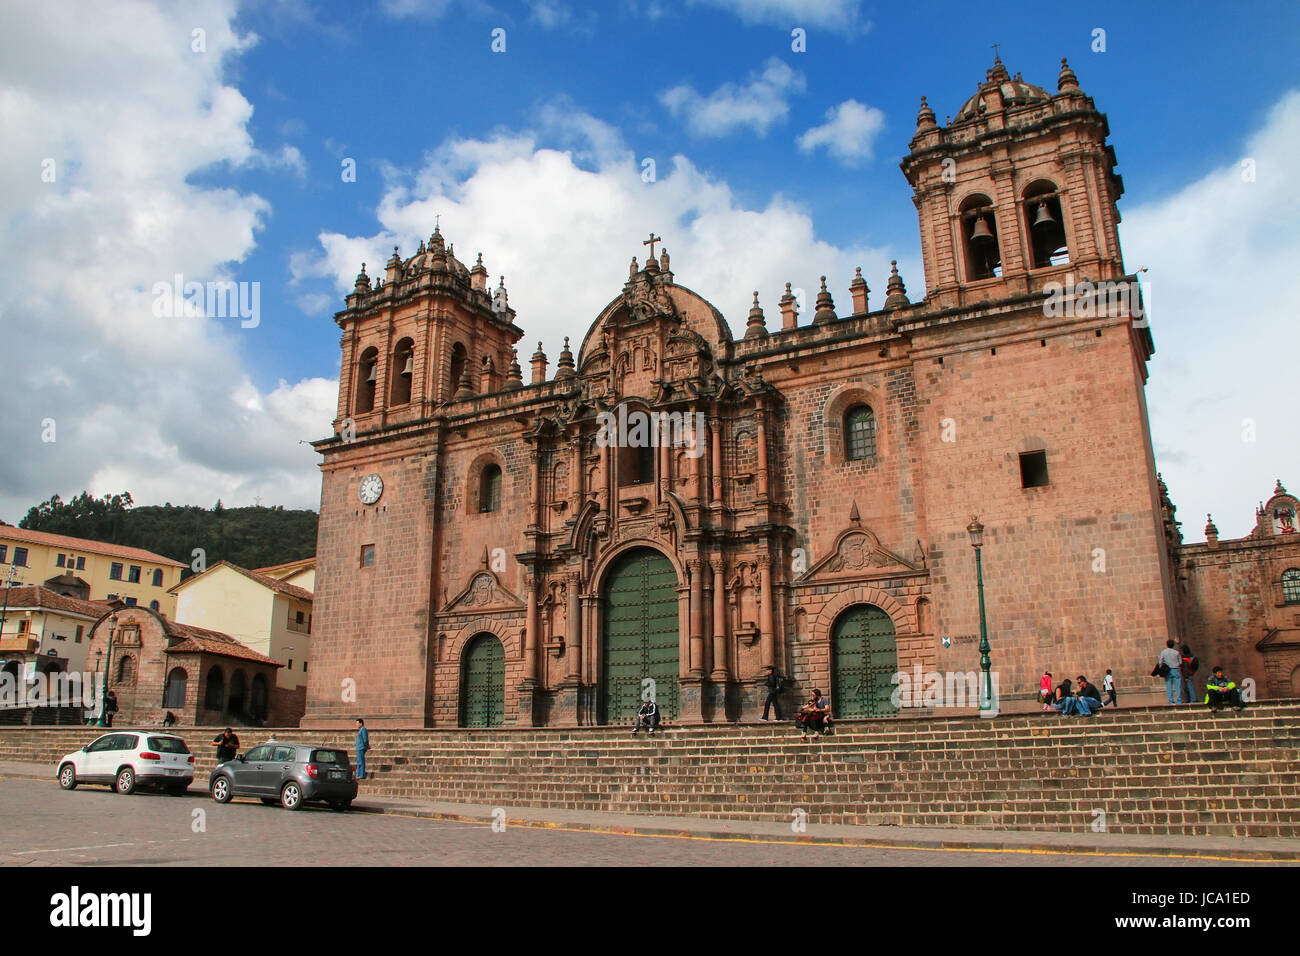 Basilique Cathédrale de l'Assomption de la Vierge sur la Plaza de Armas de Cusco, Pérou. Bâtiment a été terminé en 1654 près de 100 ans après la construction Banque D'Images